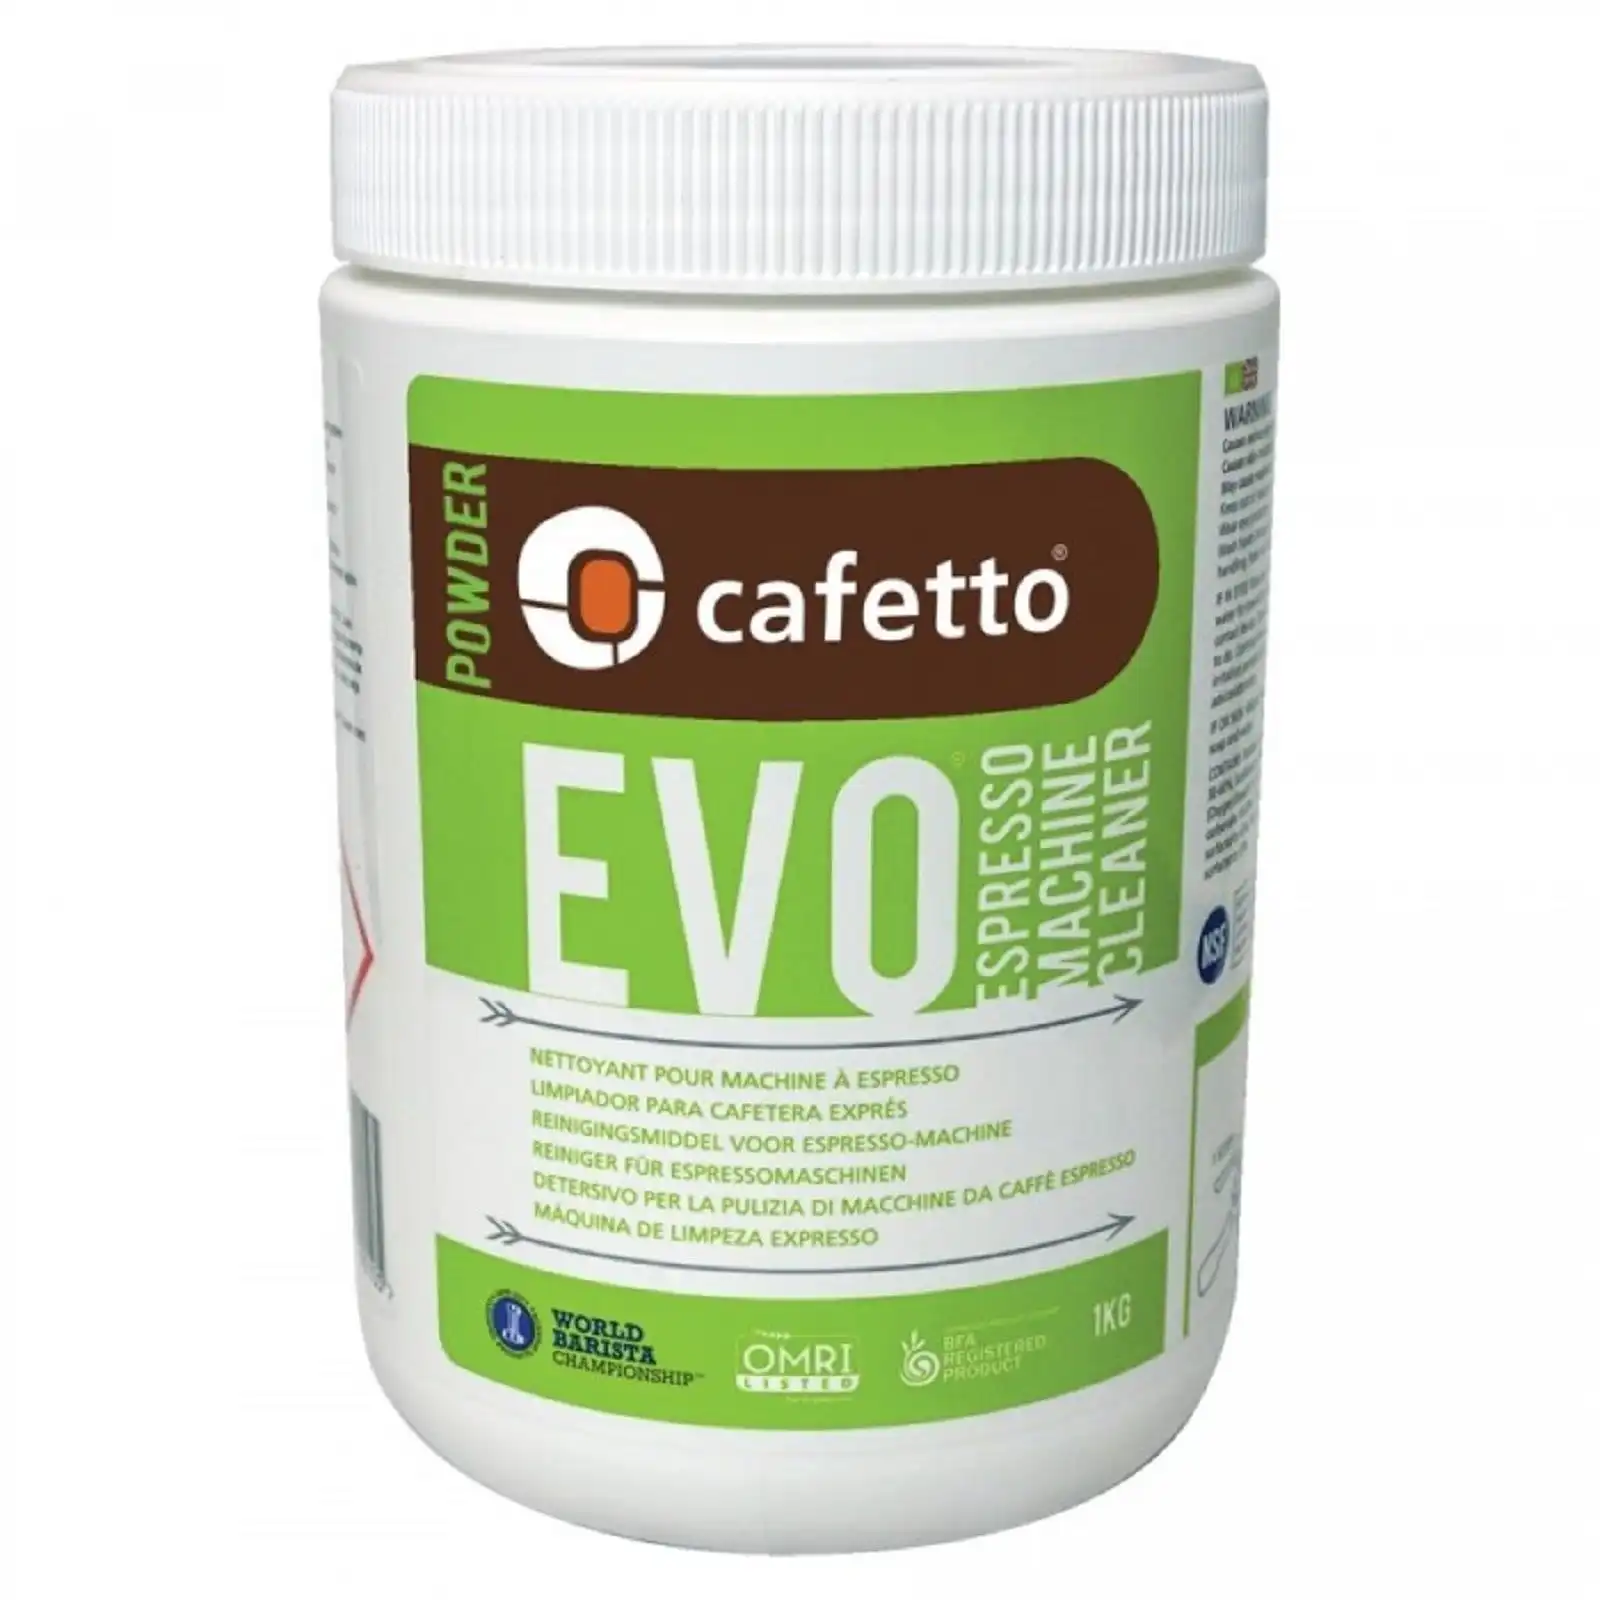 Cafetto Evo Eco Espresso Machine Cleaner